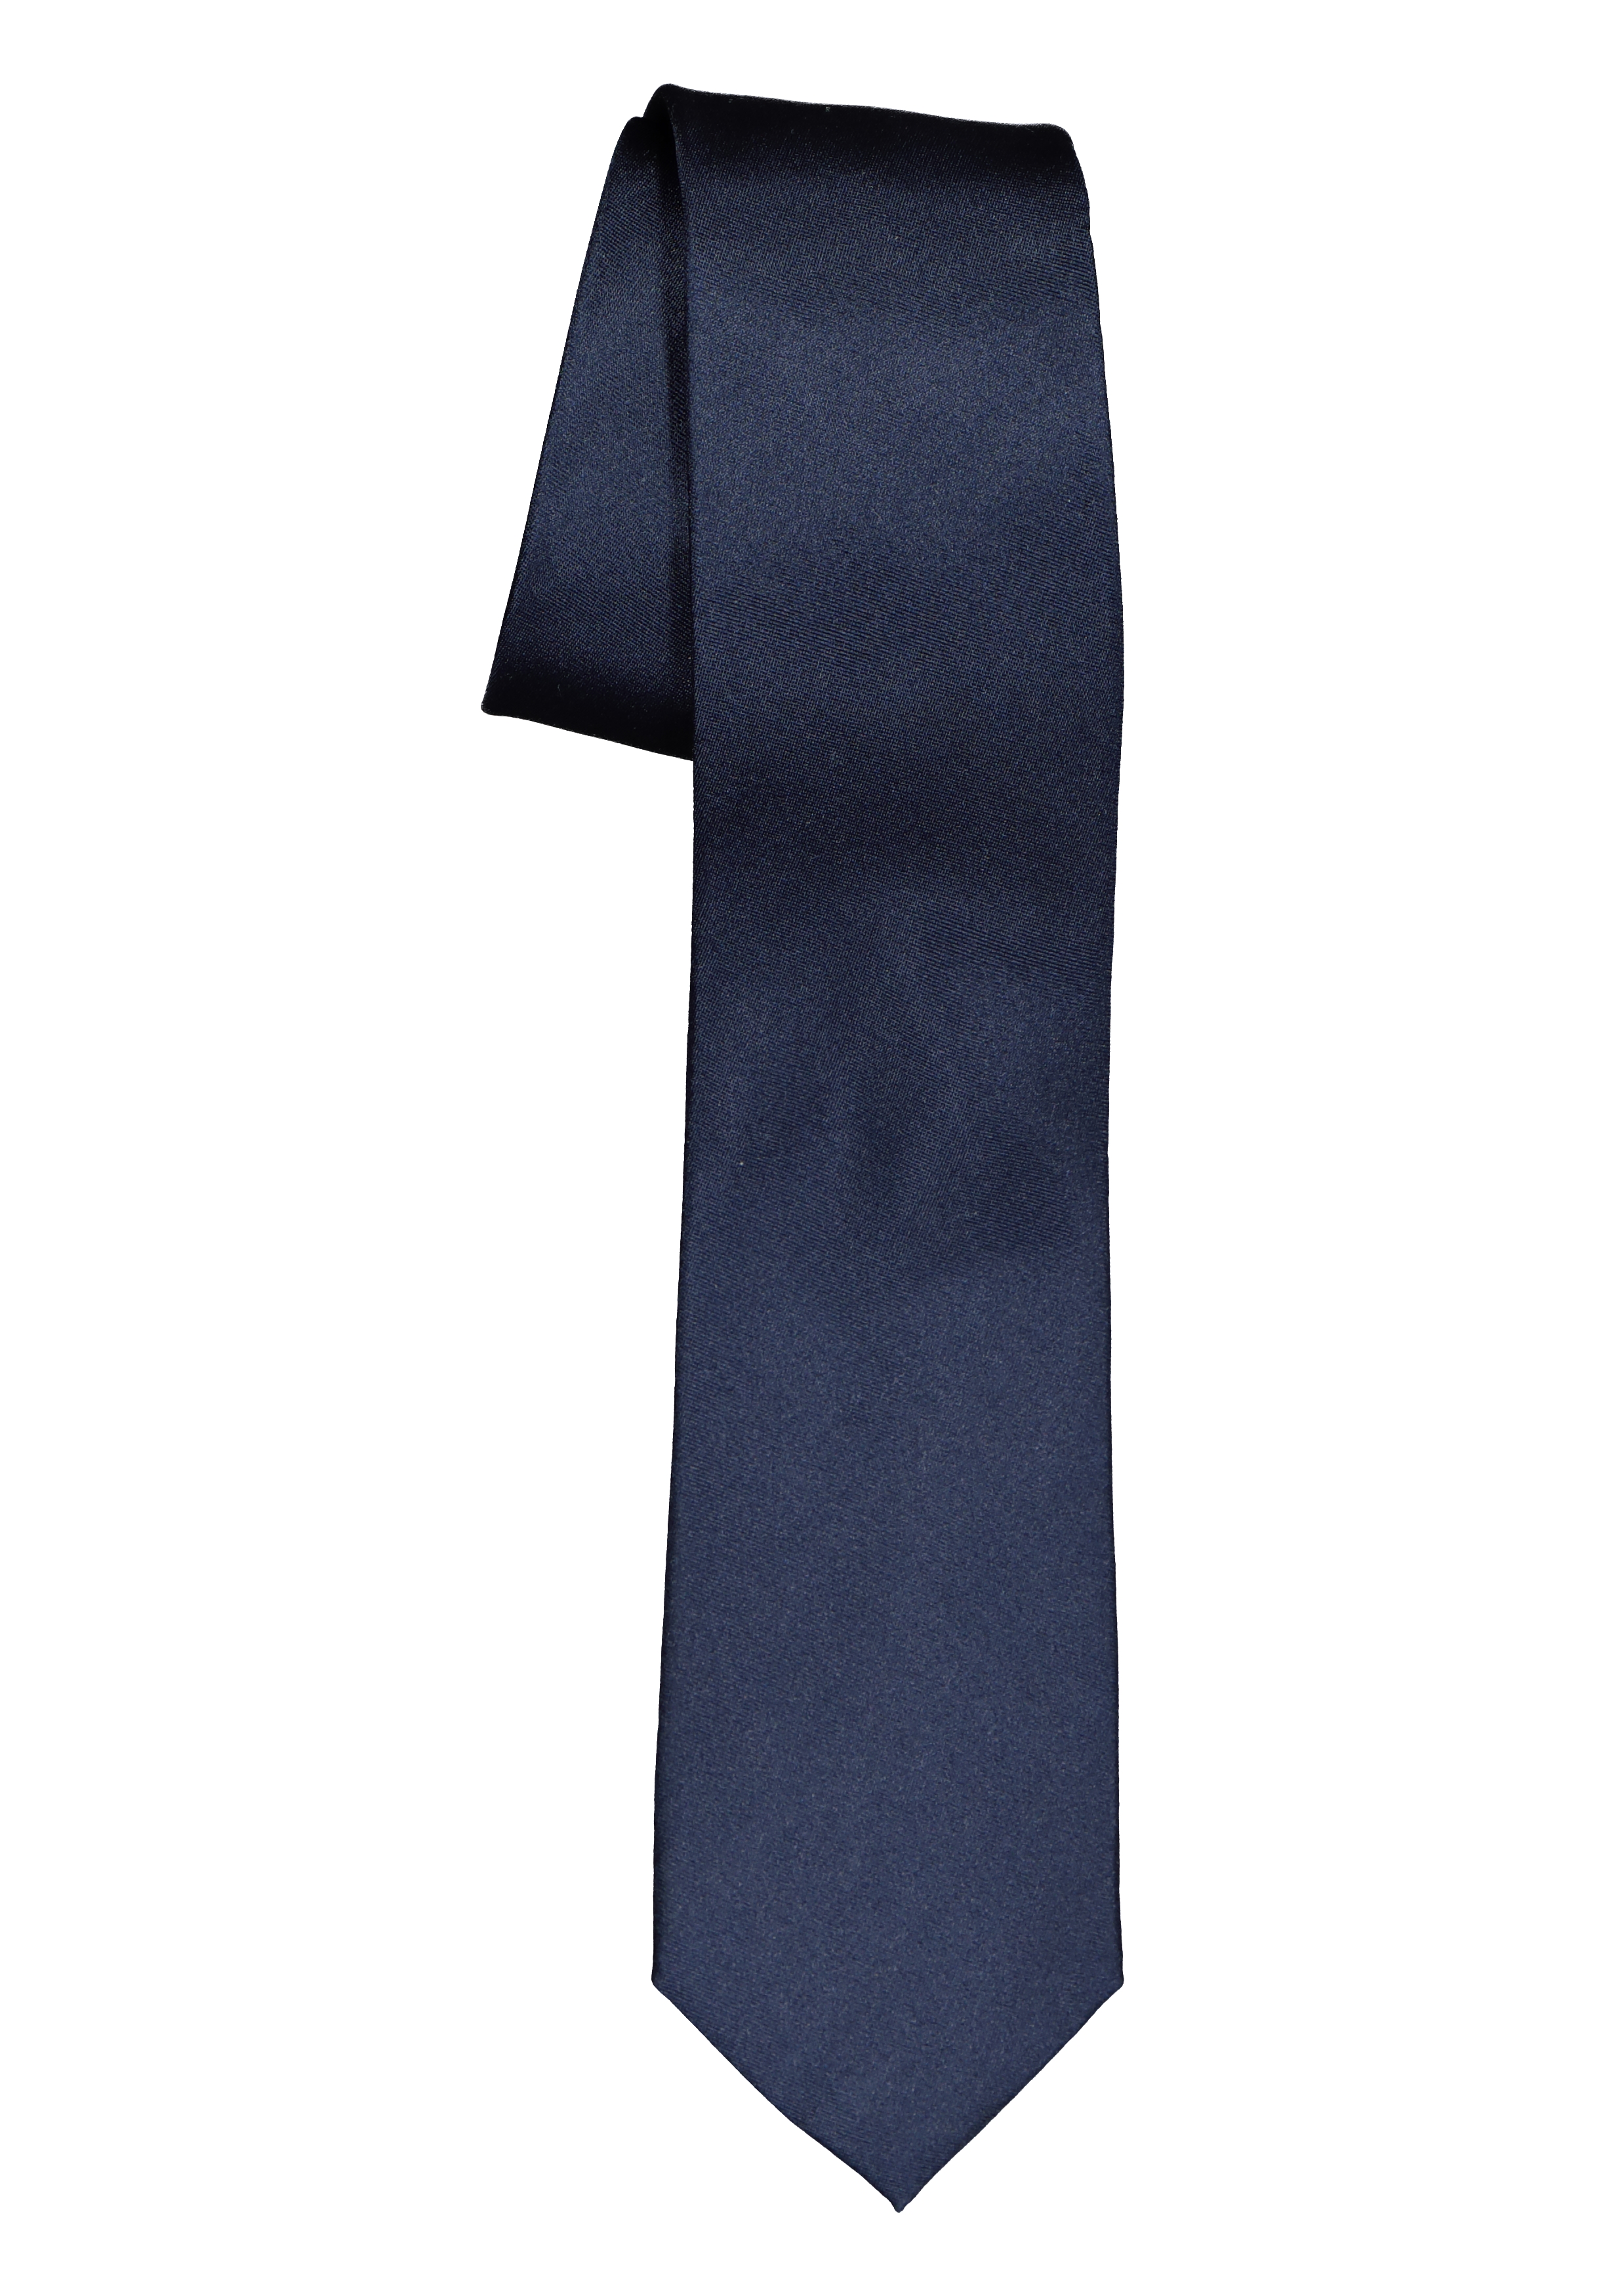 ETERNA smalle stropdas, marine blauw